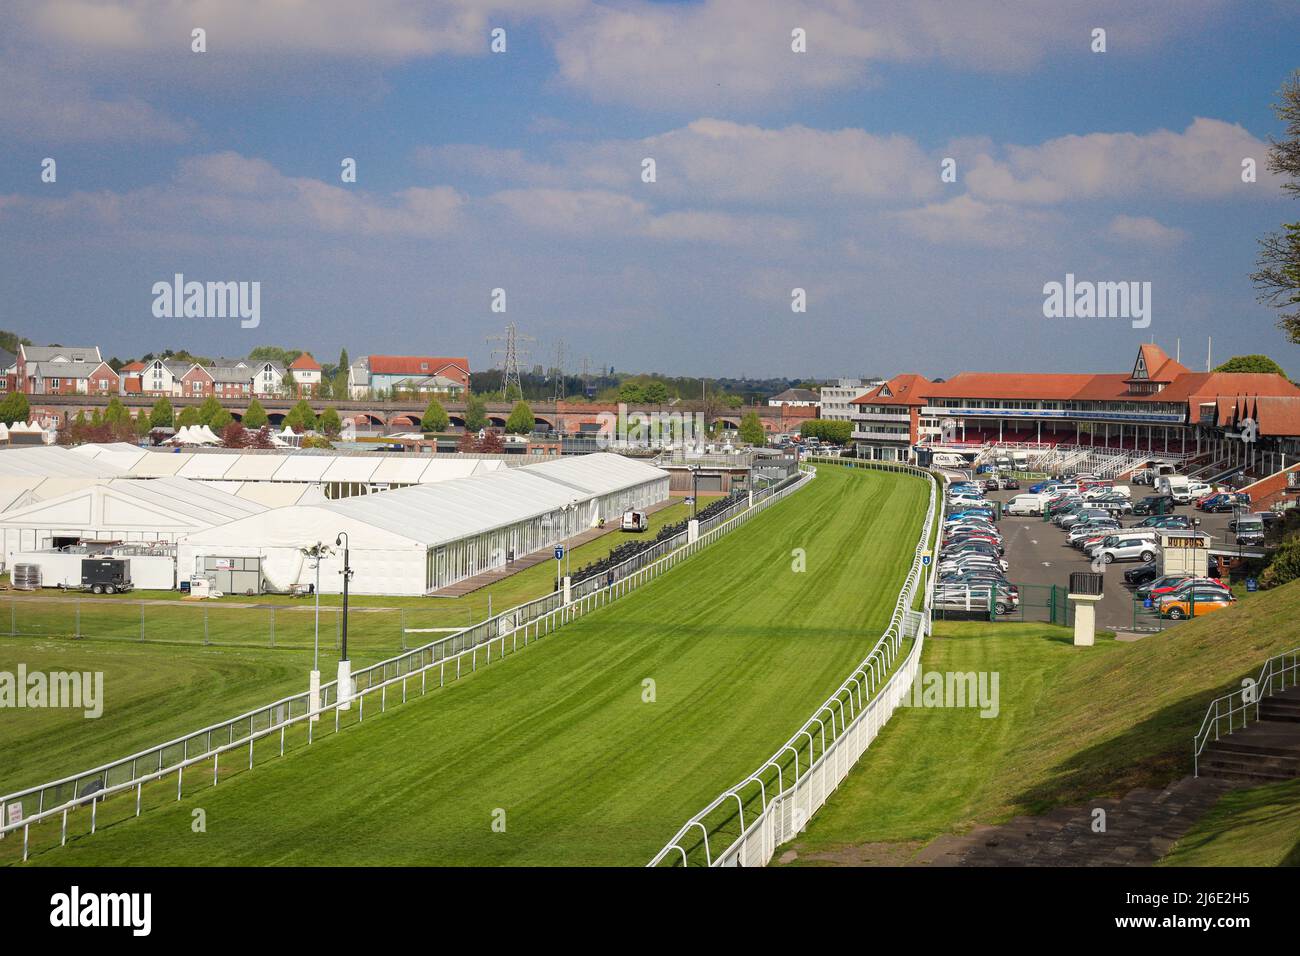 The Racecourse, Chester Stock Photo